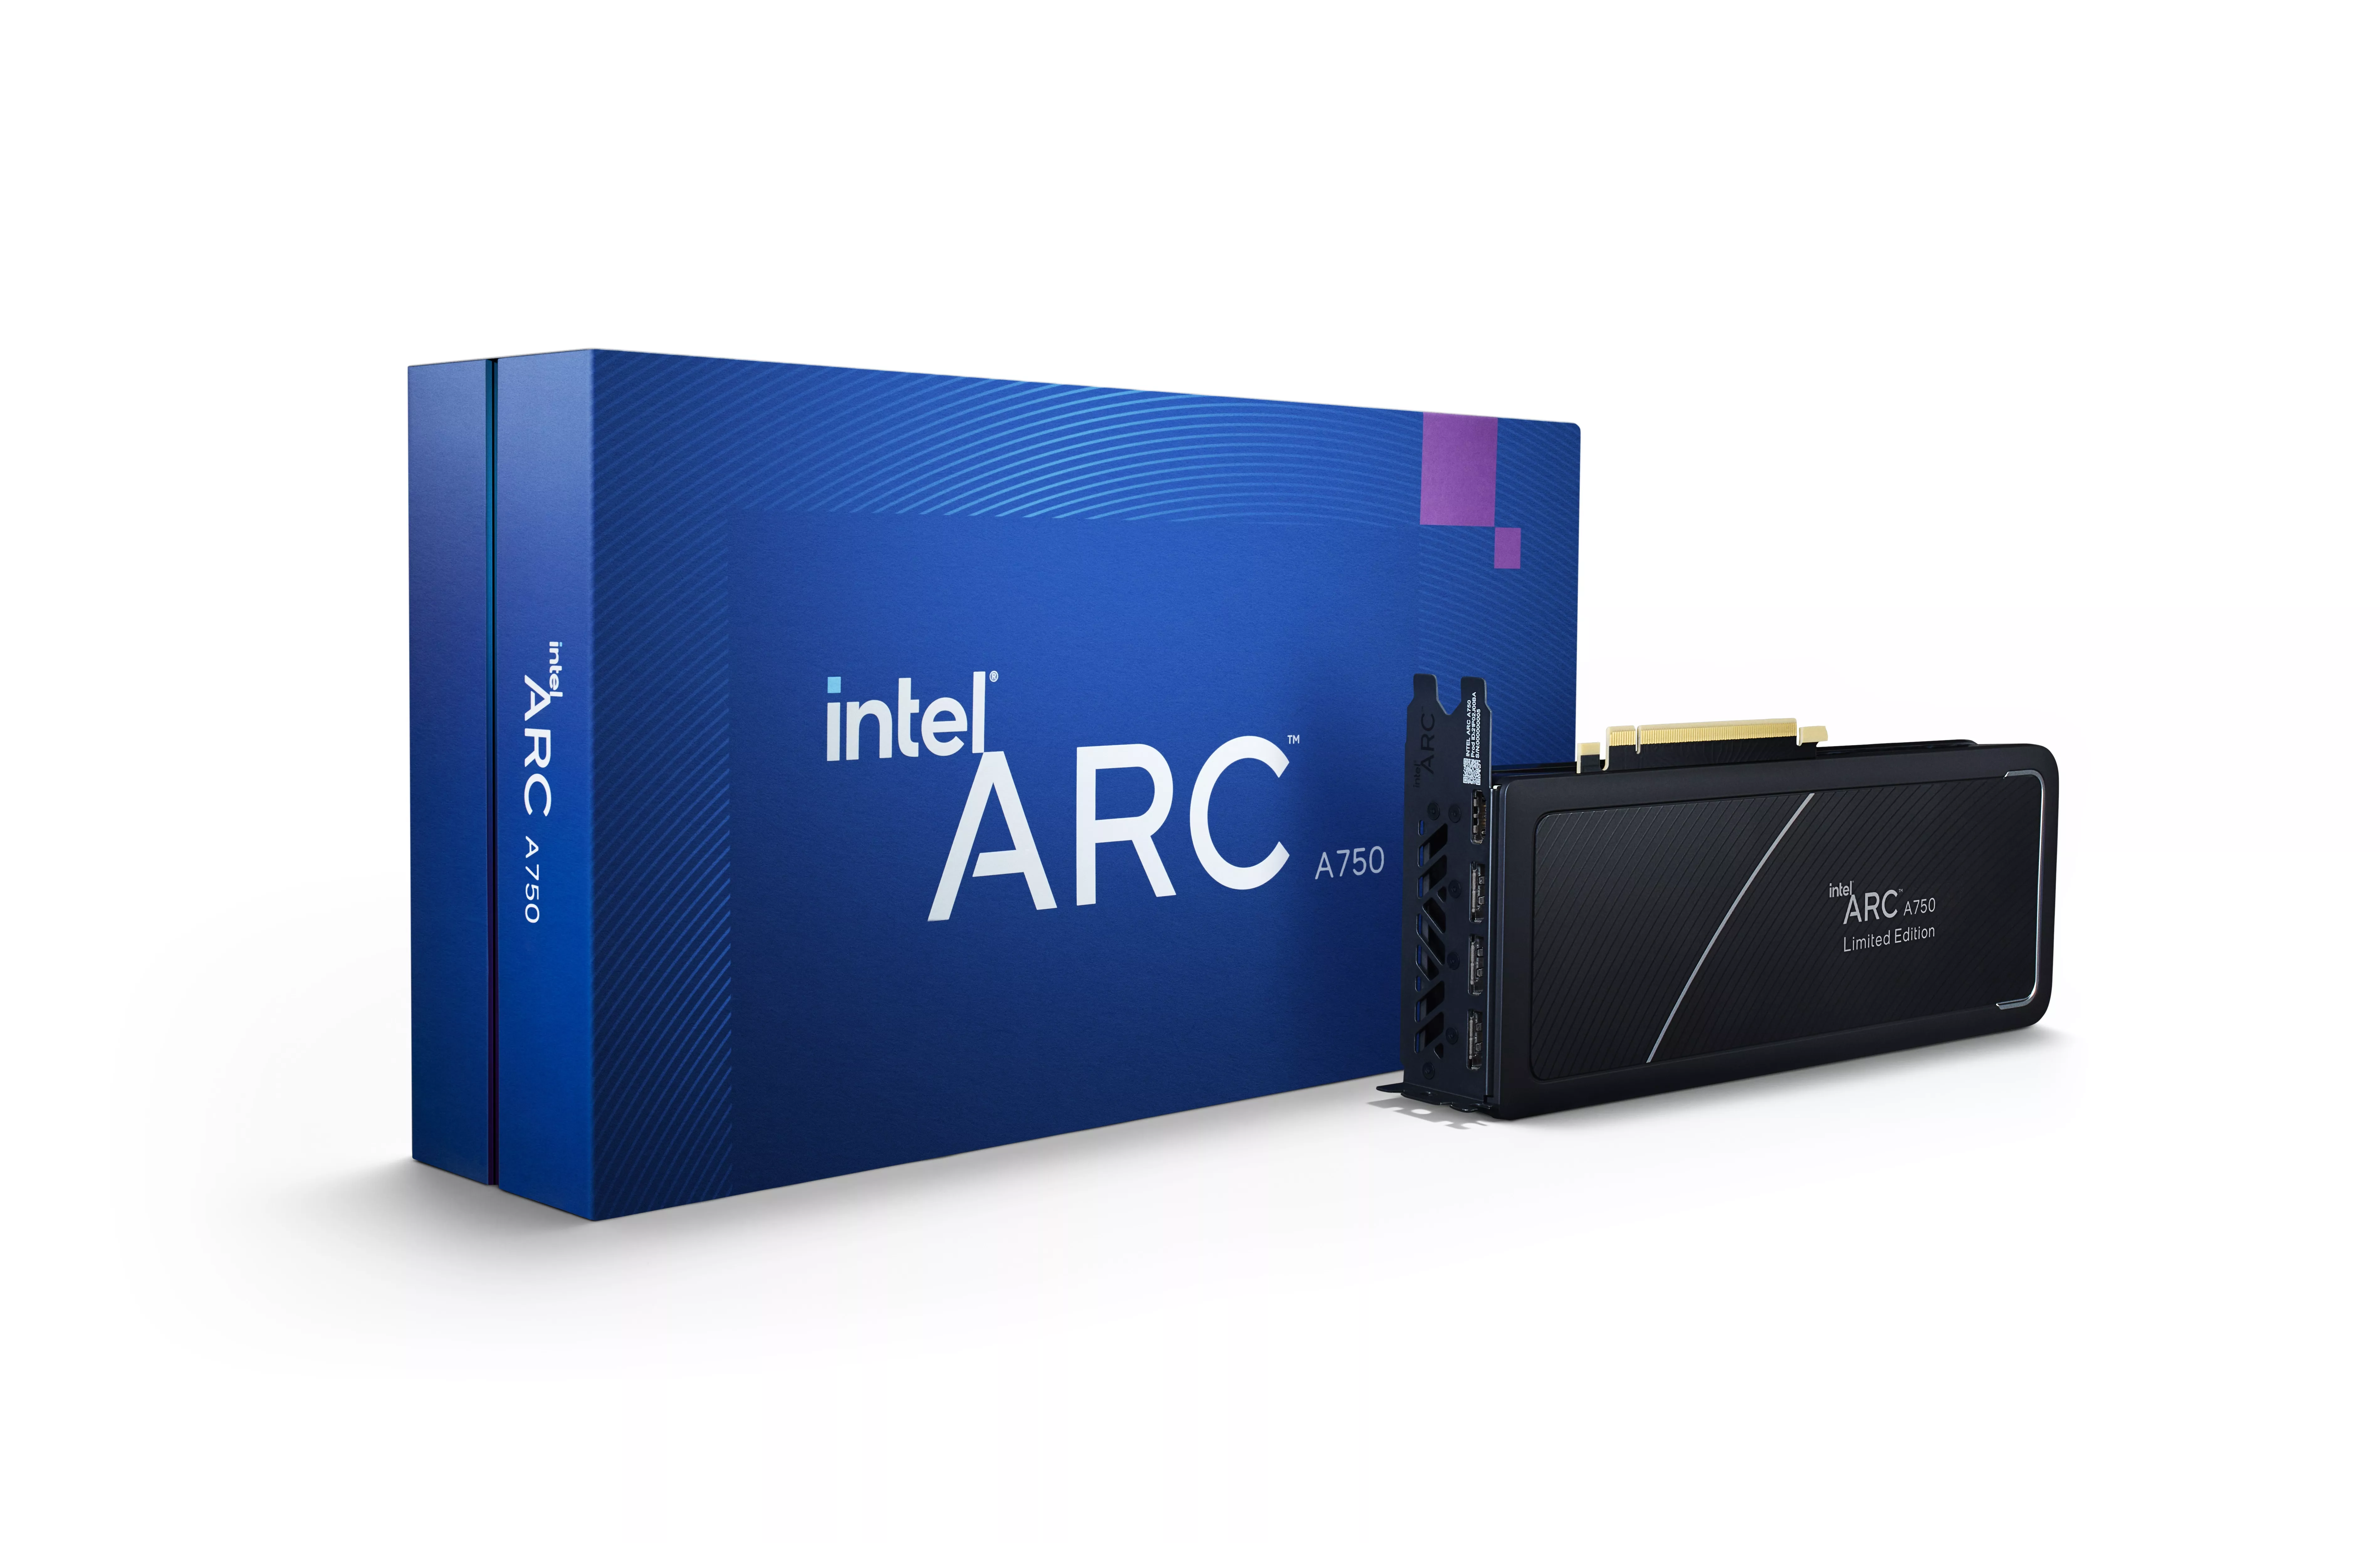 Vente INTEL Arc A750 8Go PCI Express 4.0 Graphics Intel au meilleur prix - visuel 2